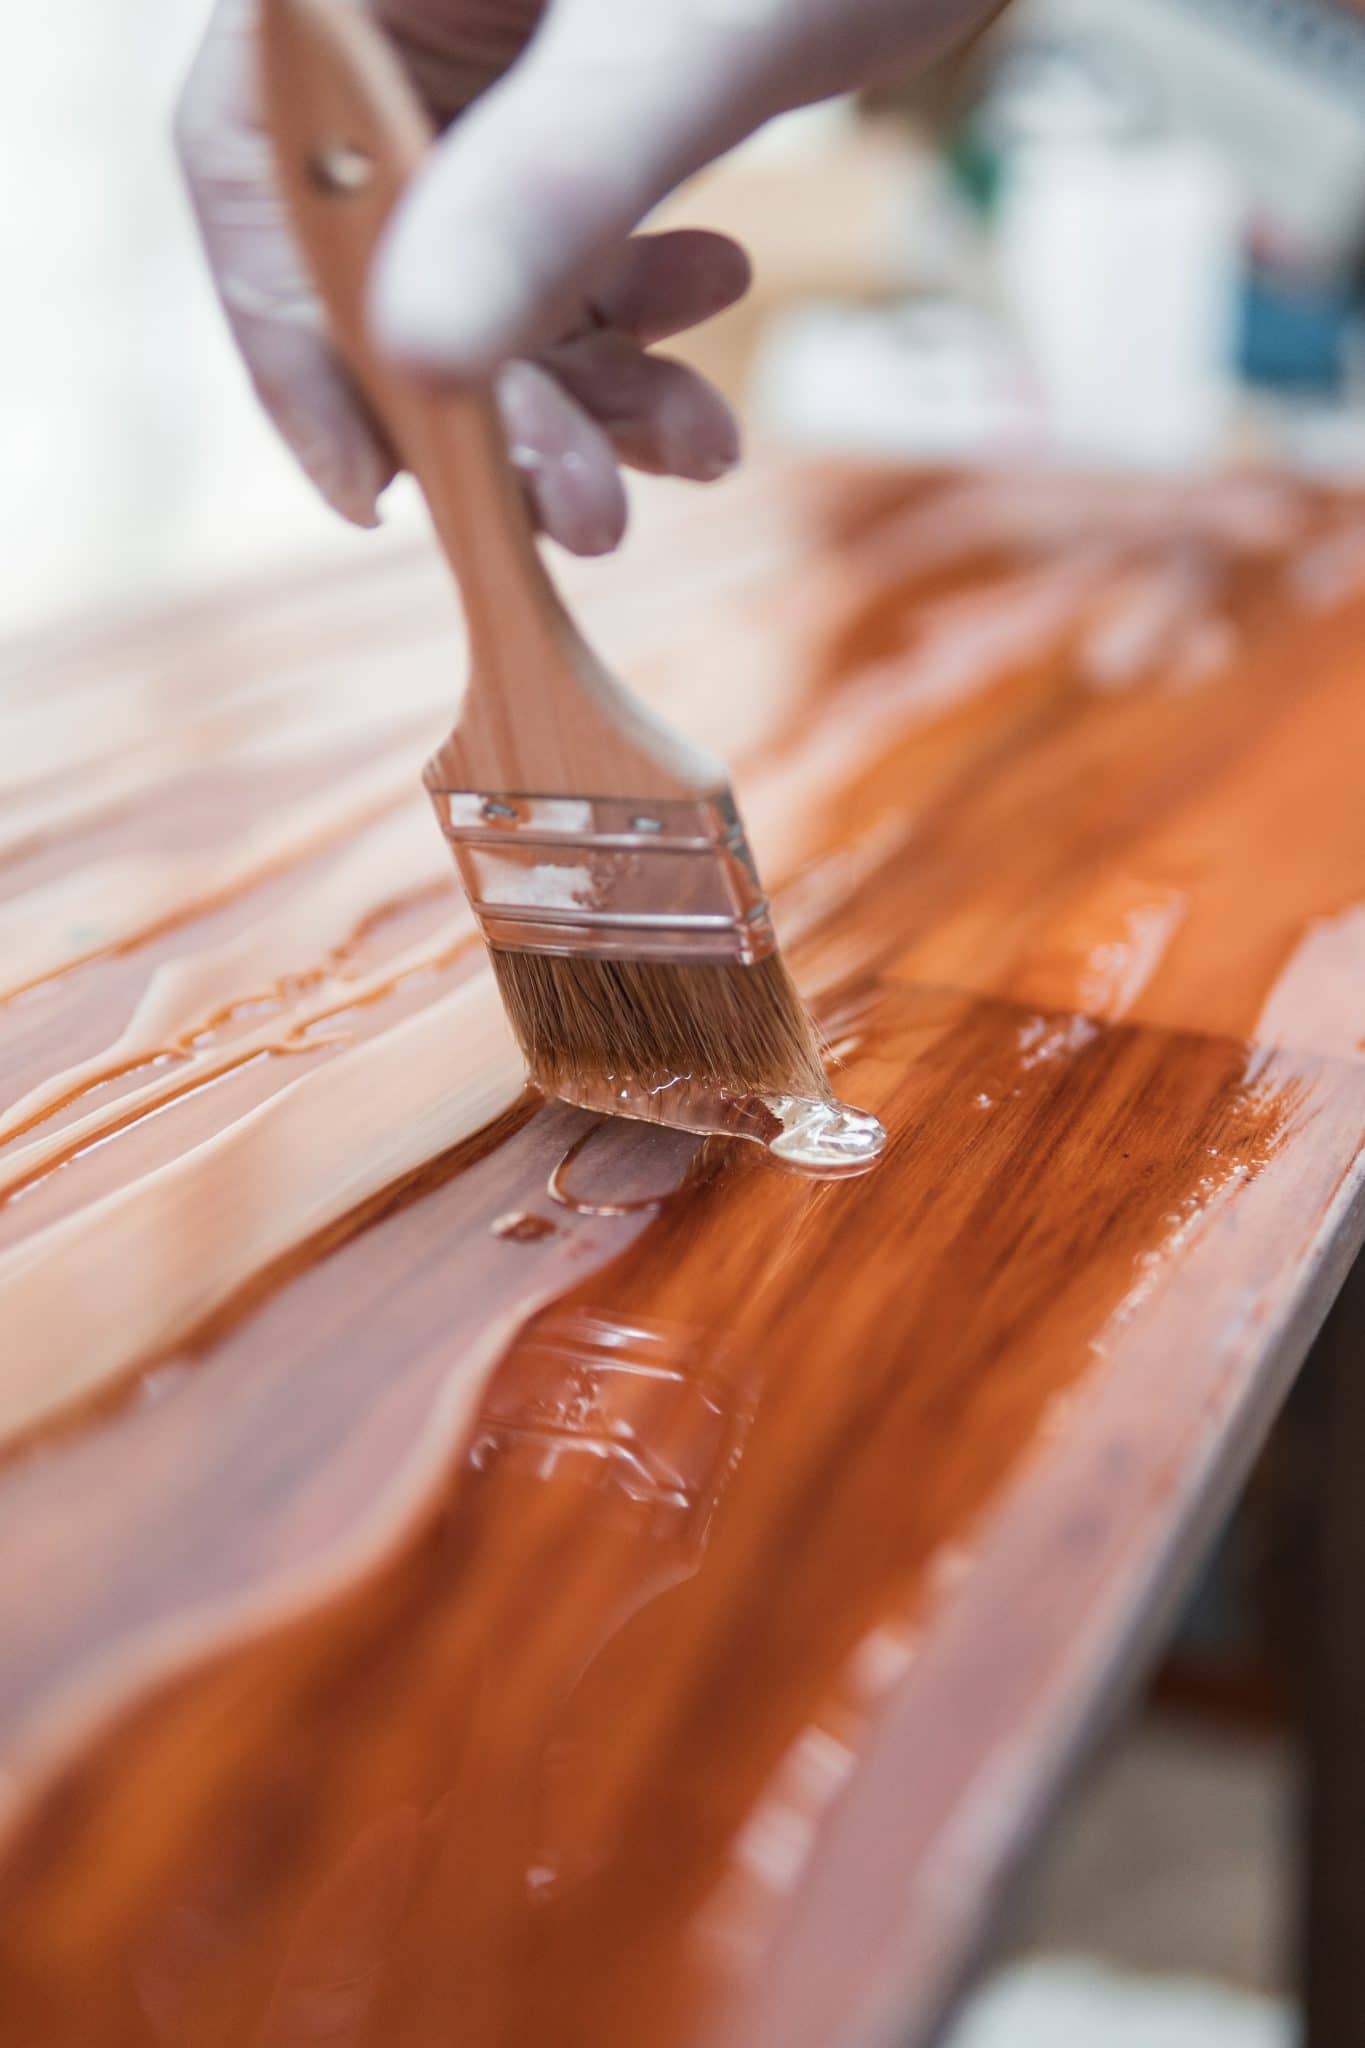 Quelle peinture choisir pour repeindre un meuble en bois ?